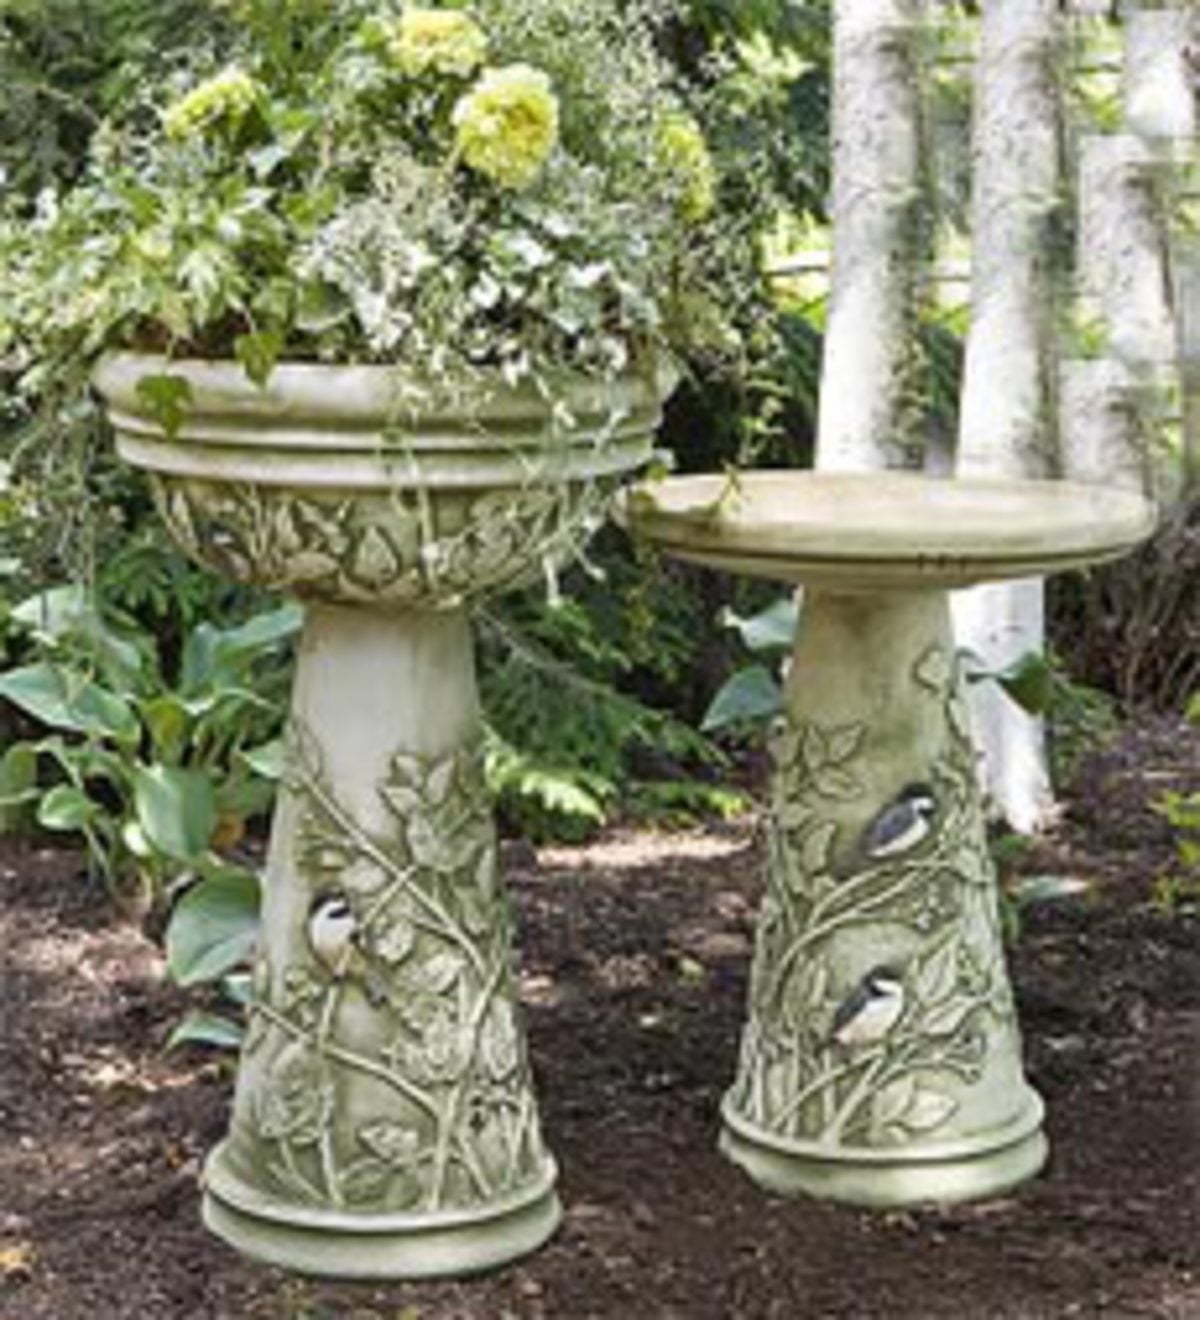 Chickadee Planter Bowl and Pedestal